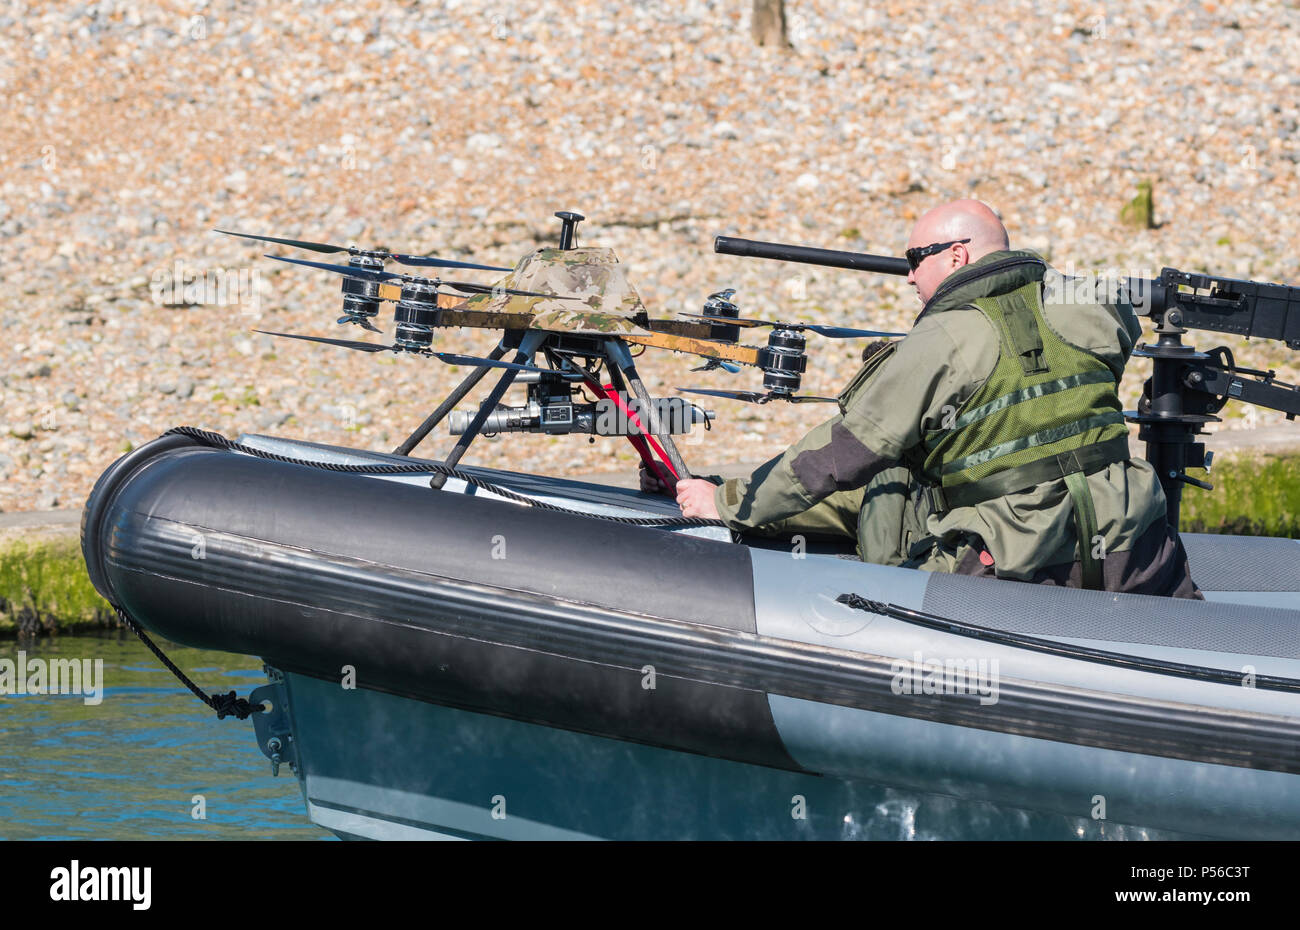 Bateau militaire équipé d'un drone de combat militaire, conçu par Mike Ring Bague de Powercraft, sur la rivière Arun, Littlehampton, West Sussex, Angleterre, Royaume-Uni. Banque D'Images